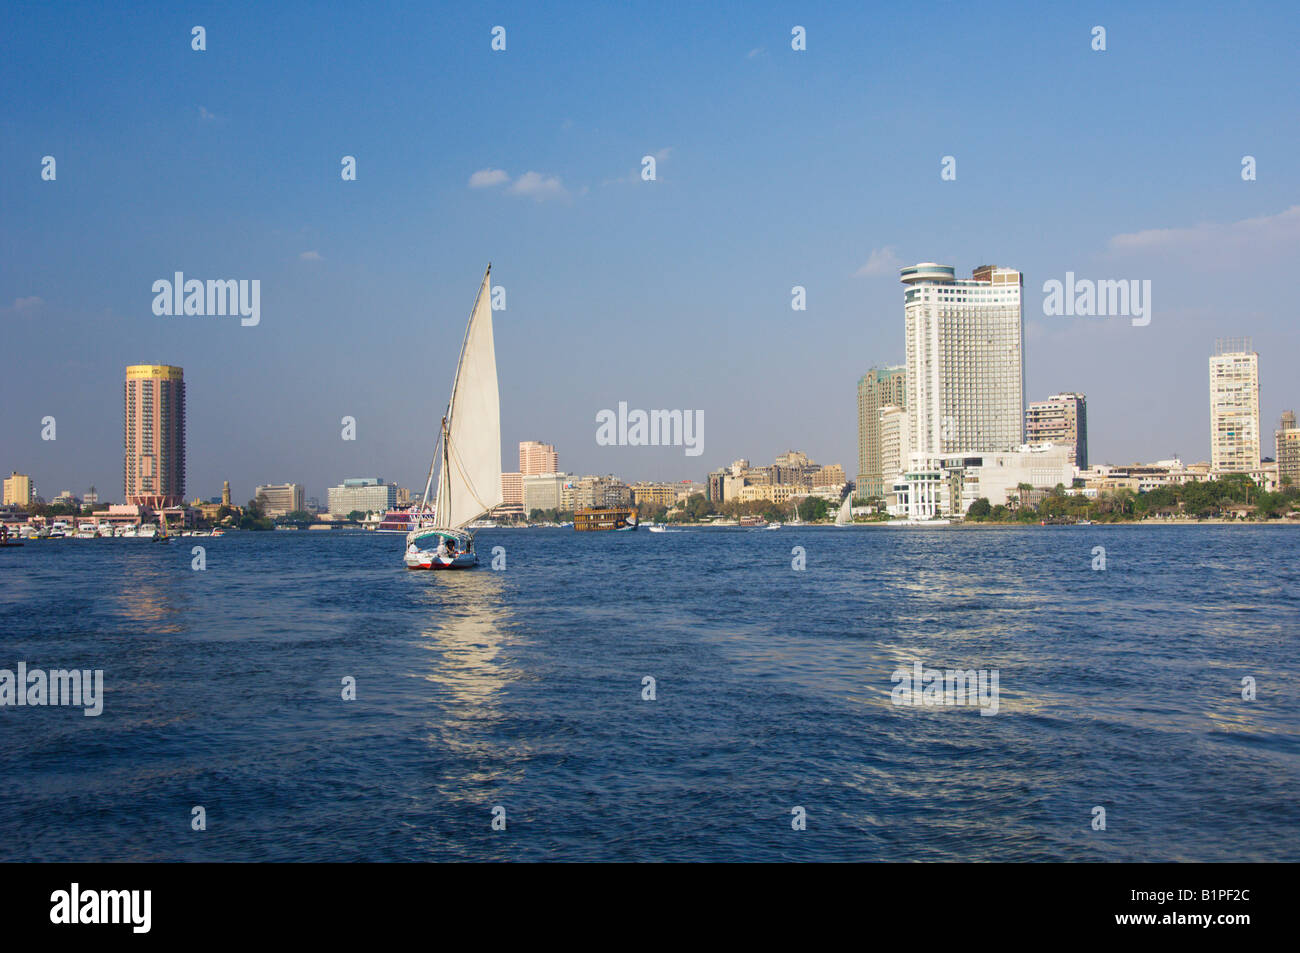 Le Sofitel et le Grand Hyatt hôtels et les toits du Caire avec une felouque voilier provenant du Nil Egypte Banque D'Images